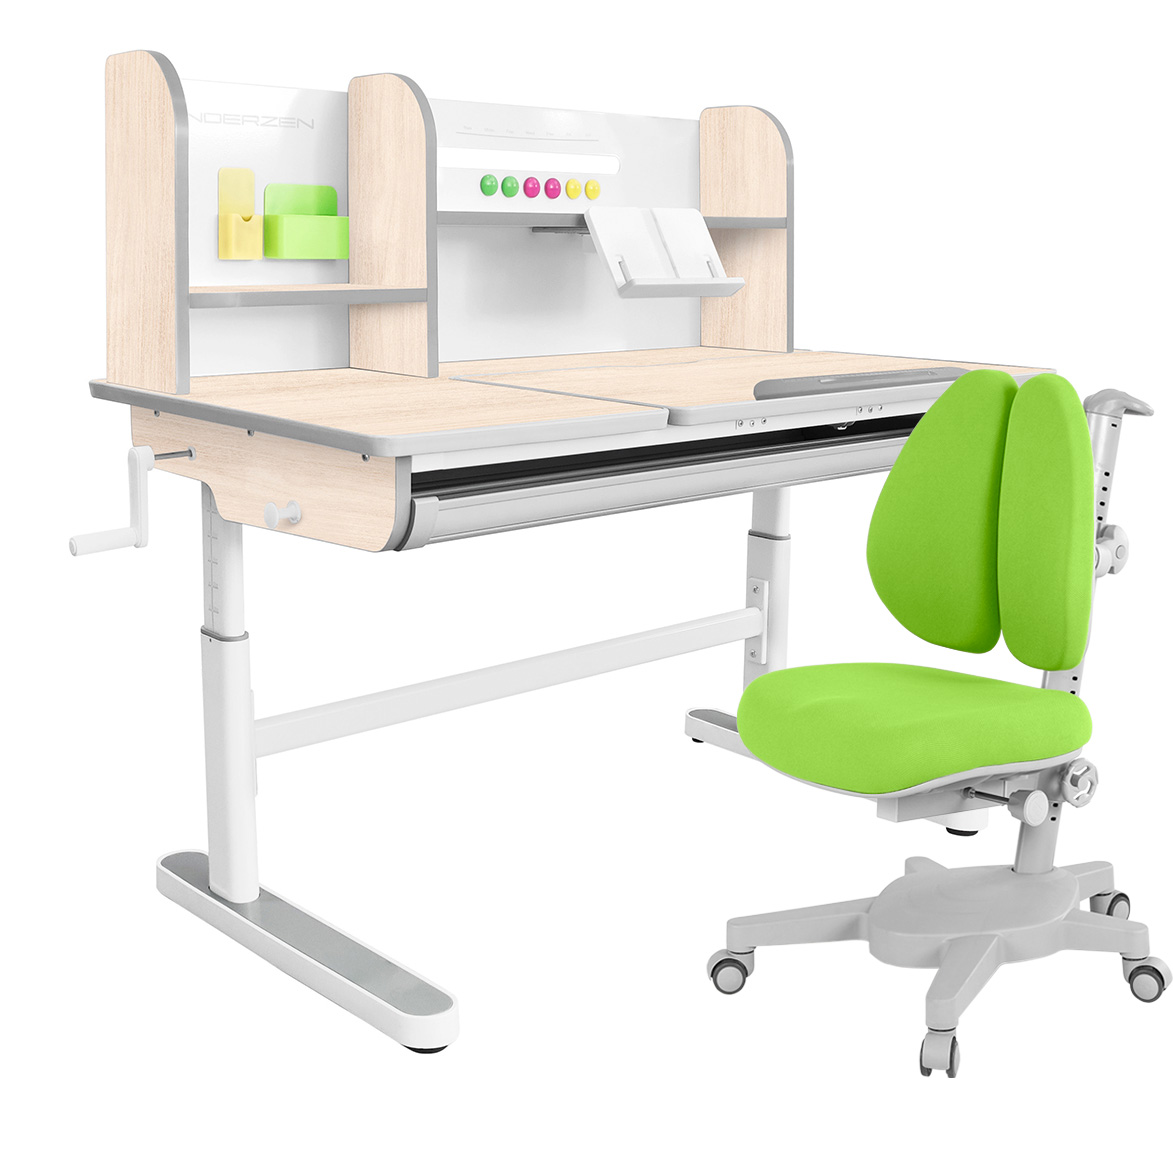 Комплект парта KinderZen Gaudi Plus клен/серый c зеленым креслом Armata Duos комплект парта anatomica study 120 lux клен серый с зеленым креслом armata duos